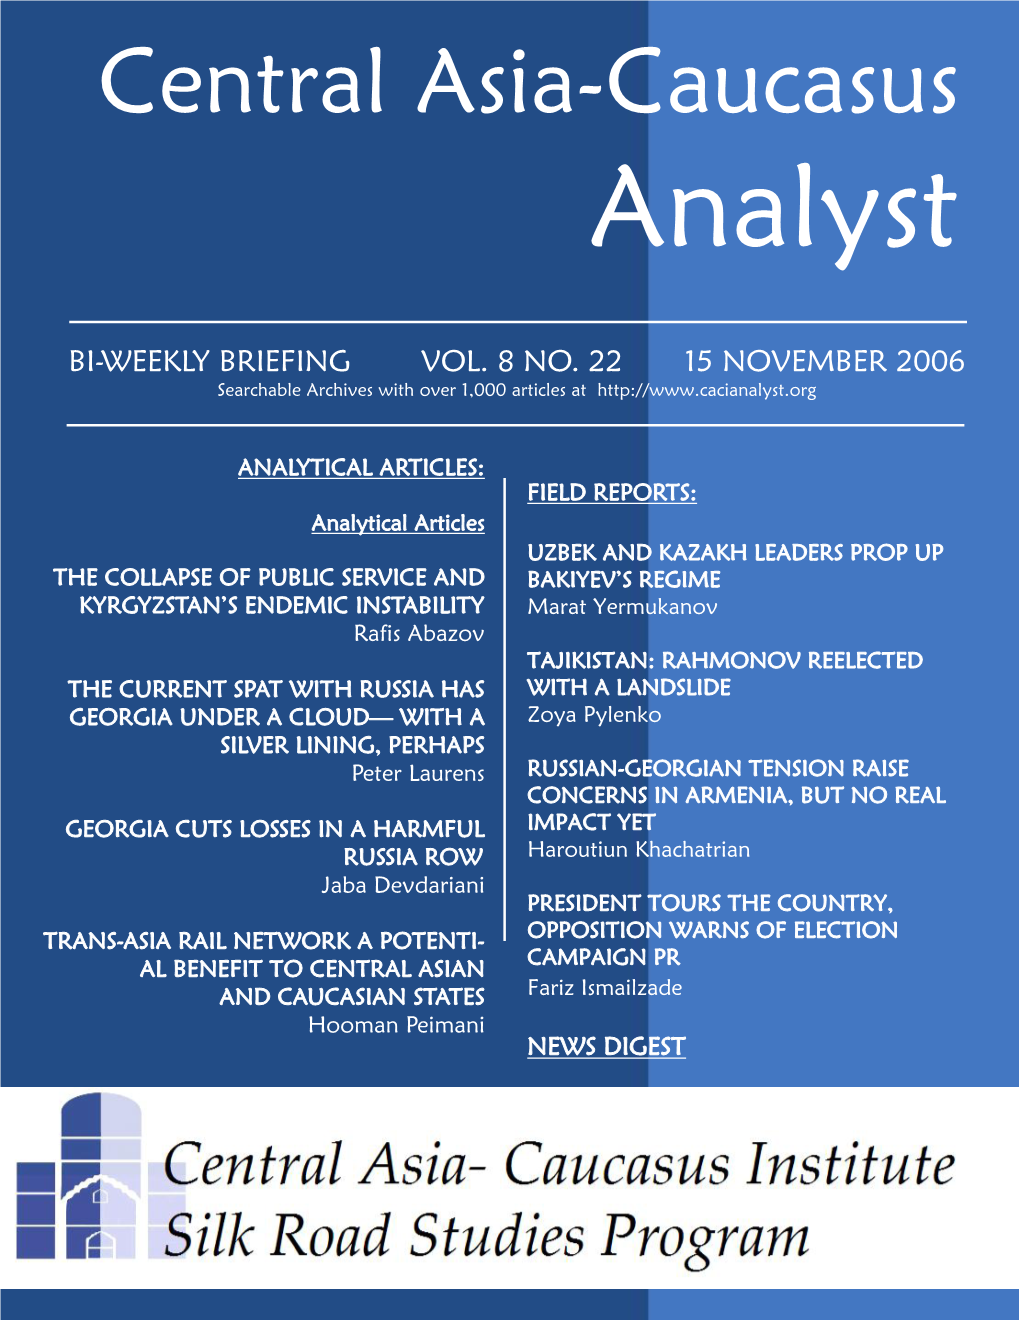 Central Asia-Caucasus Analyst Vol 8, No 22